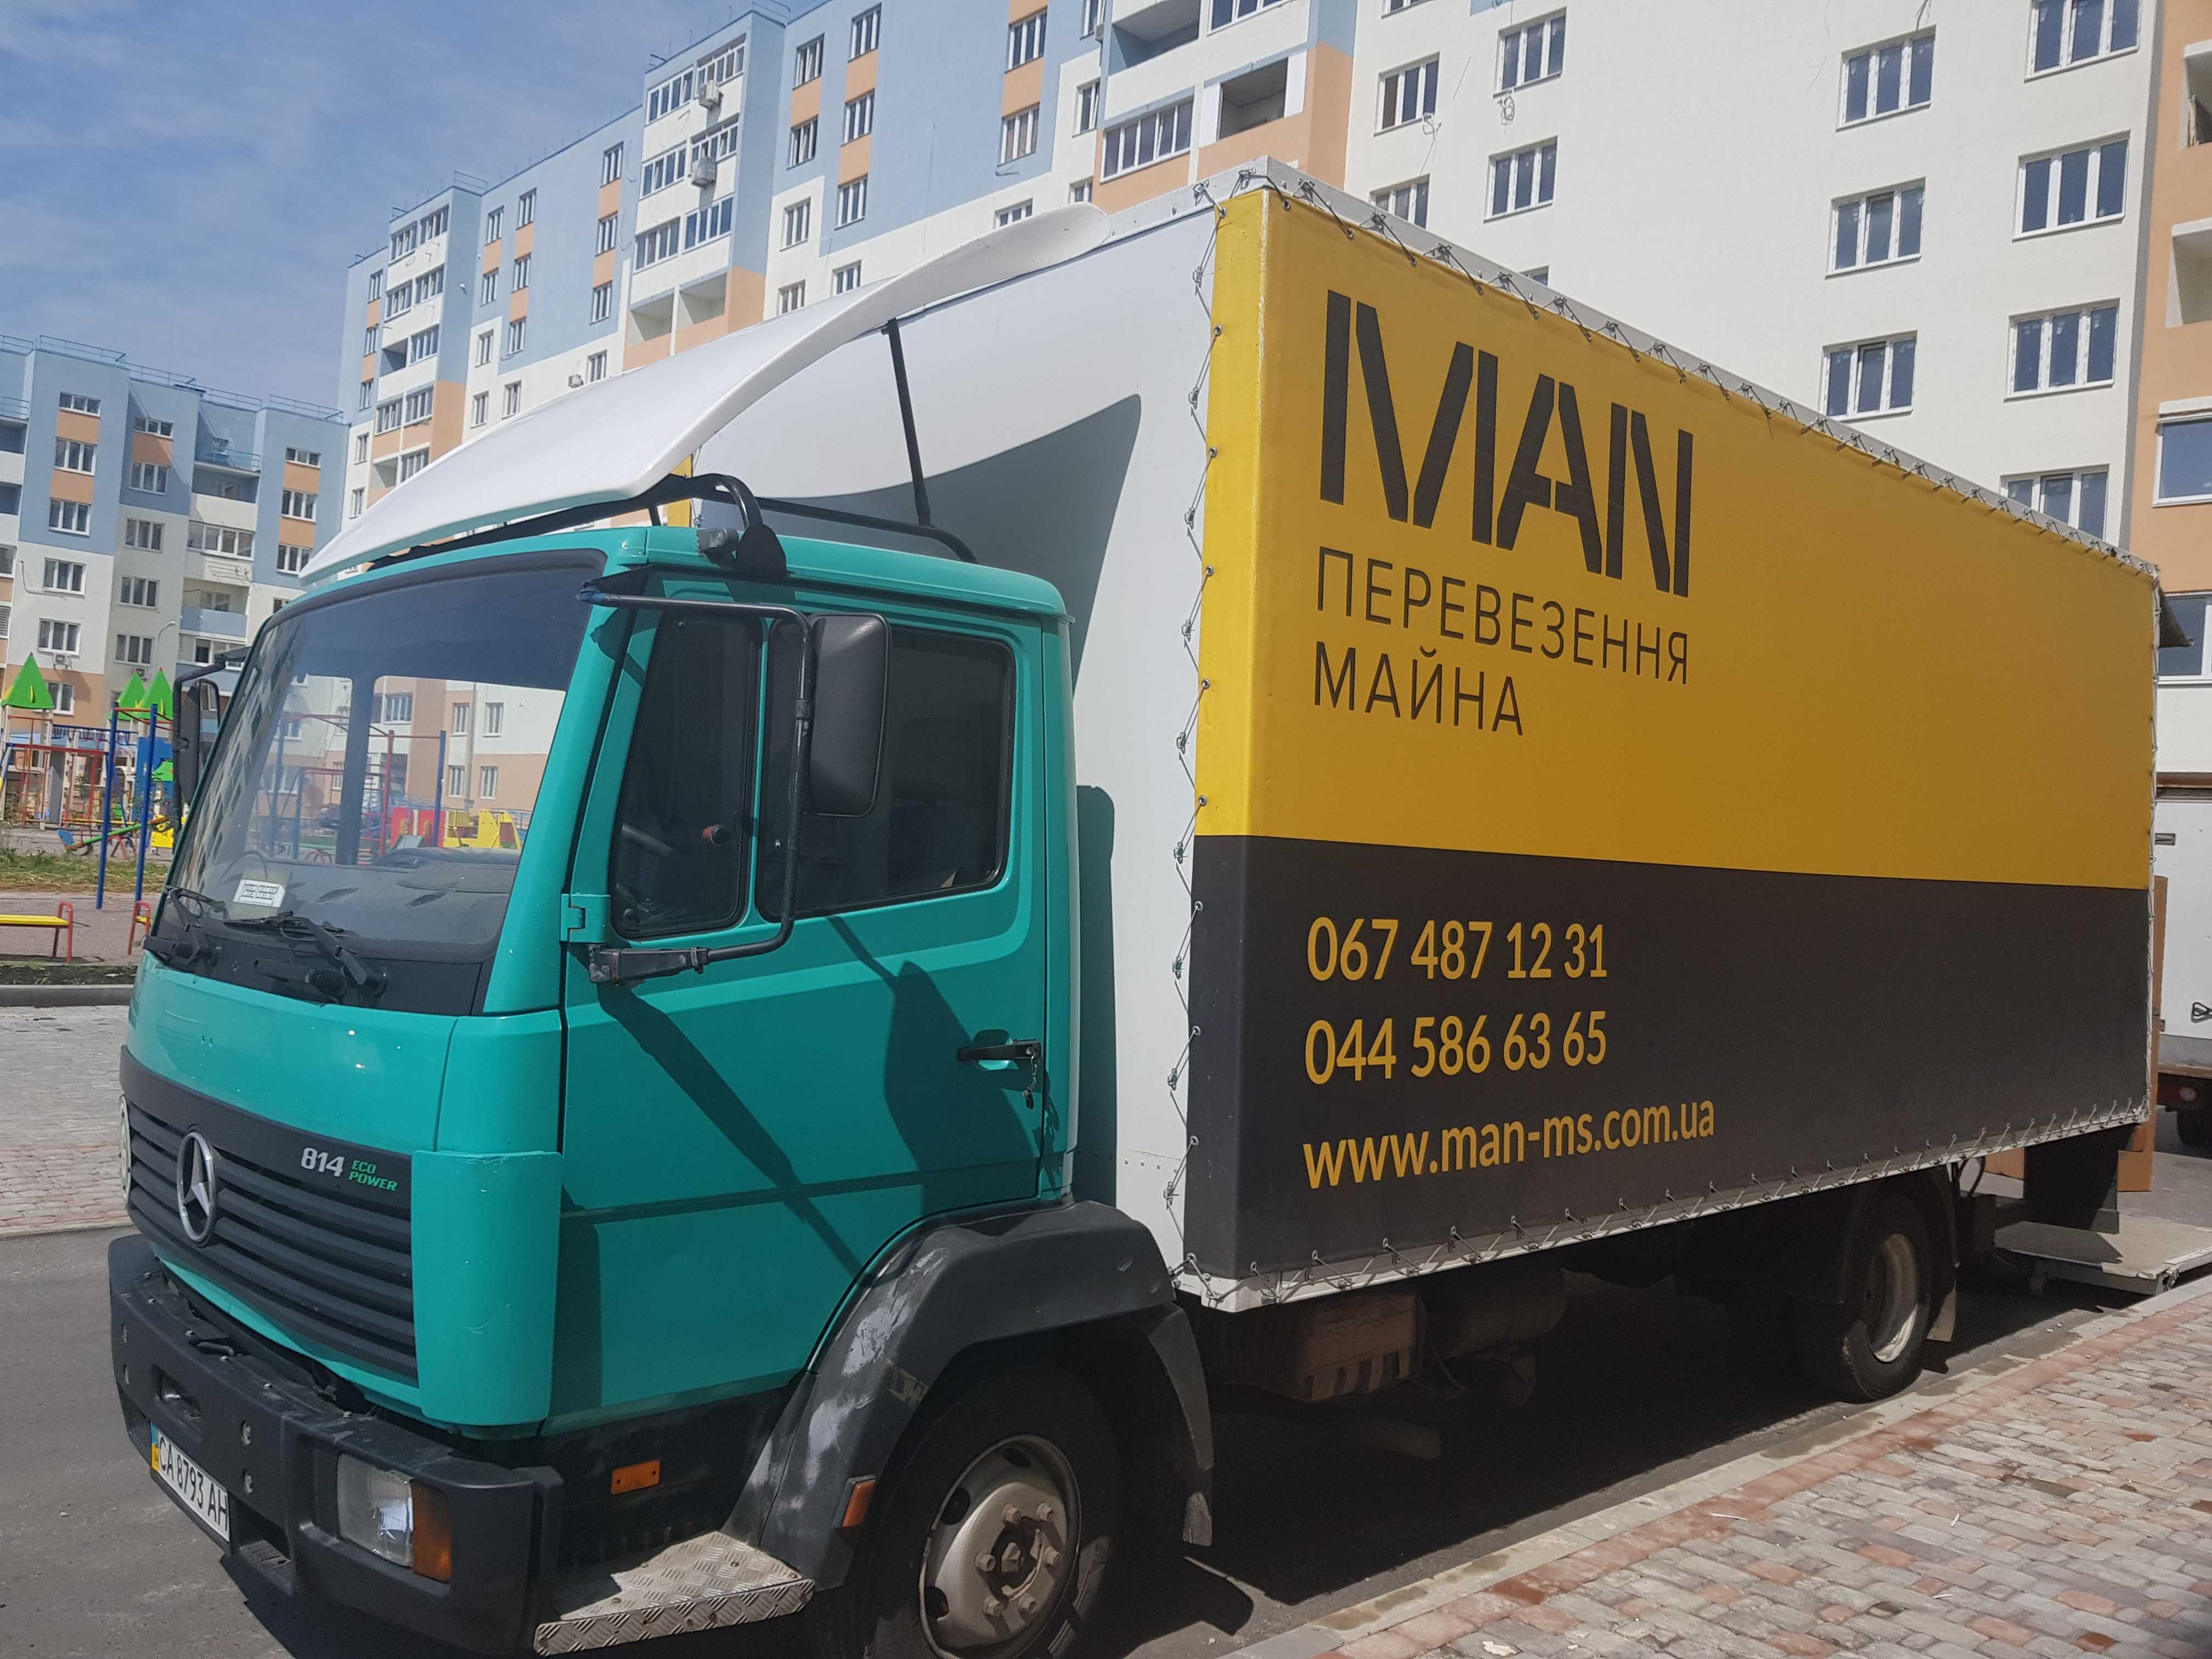 Вантажники, перевезення меблів Київ, та інші міста України